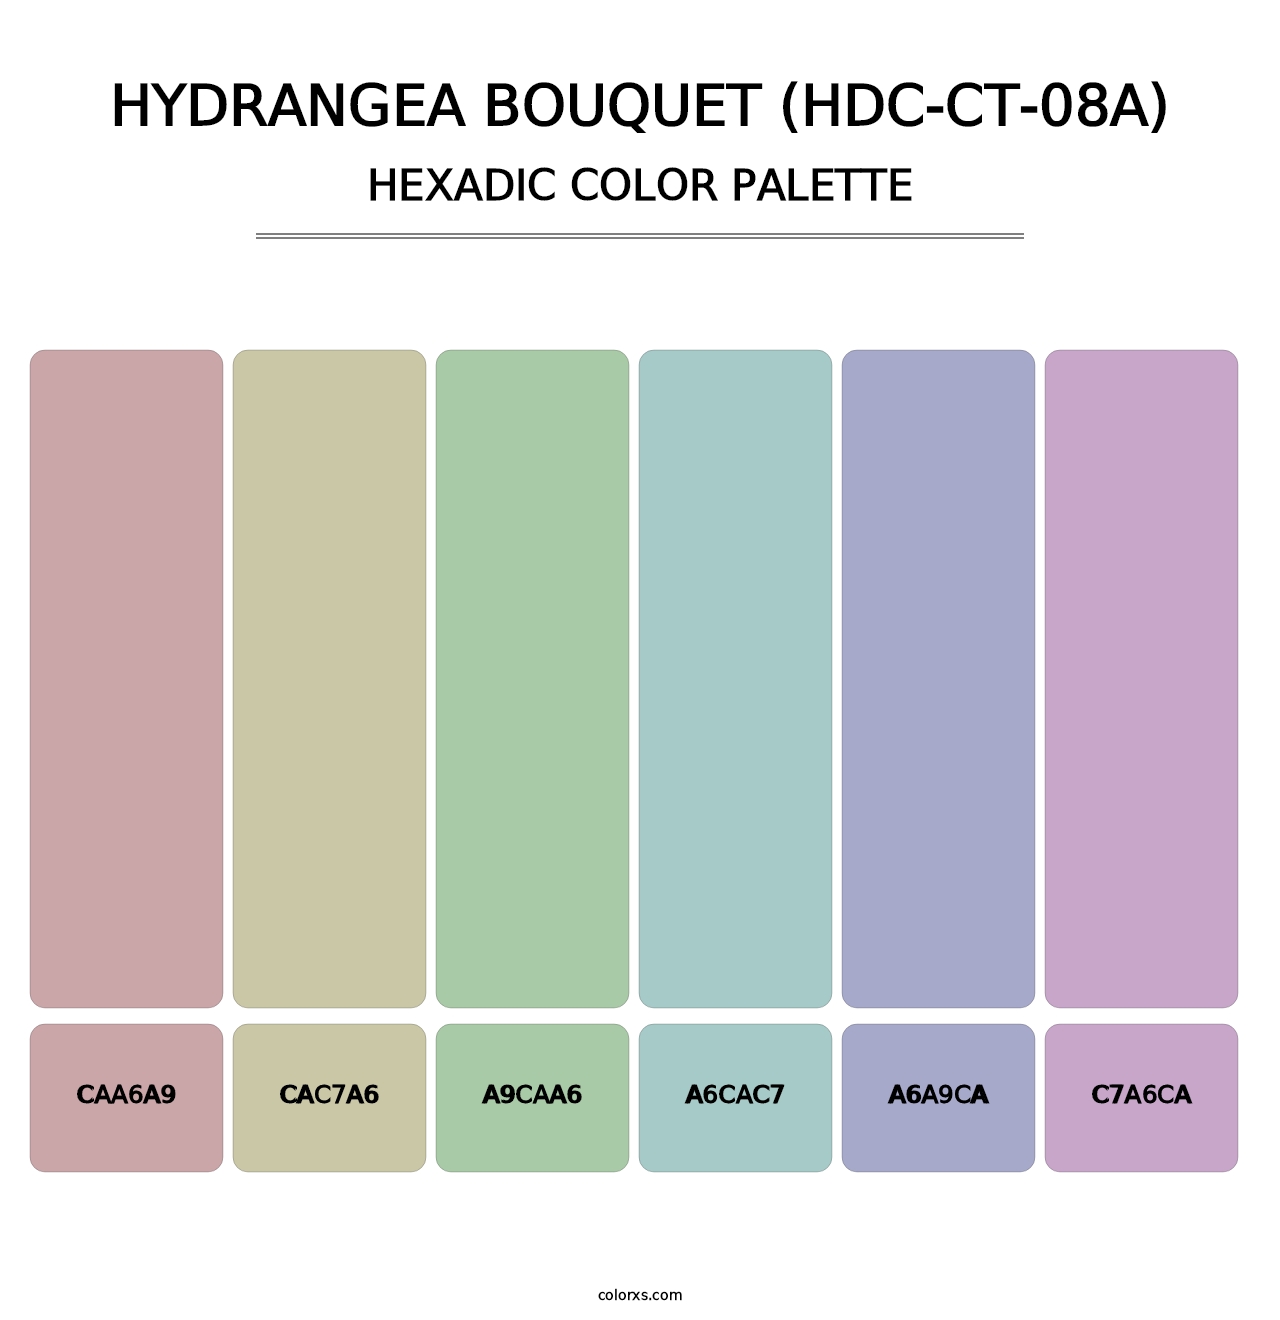 Hydrangea Bouquet (HDC-CT-08A) - Hexadic Color Palette